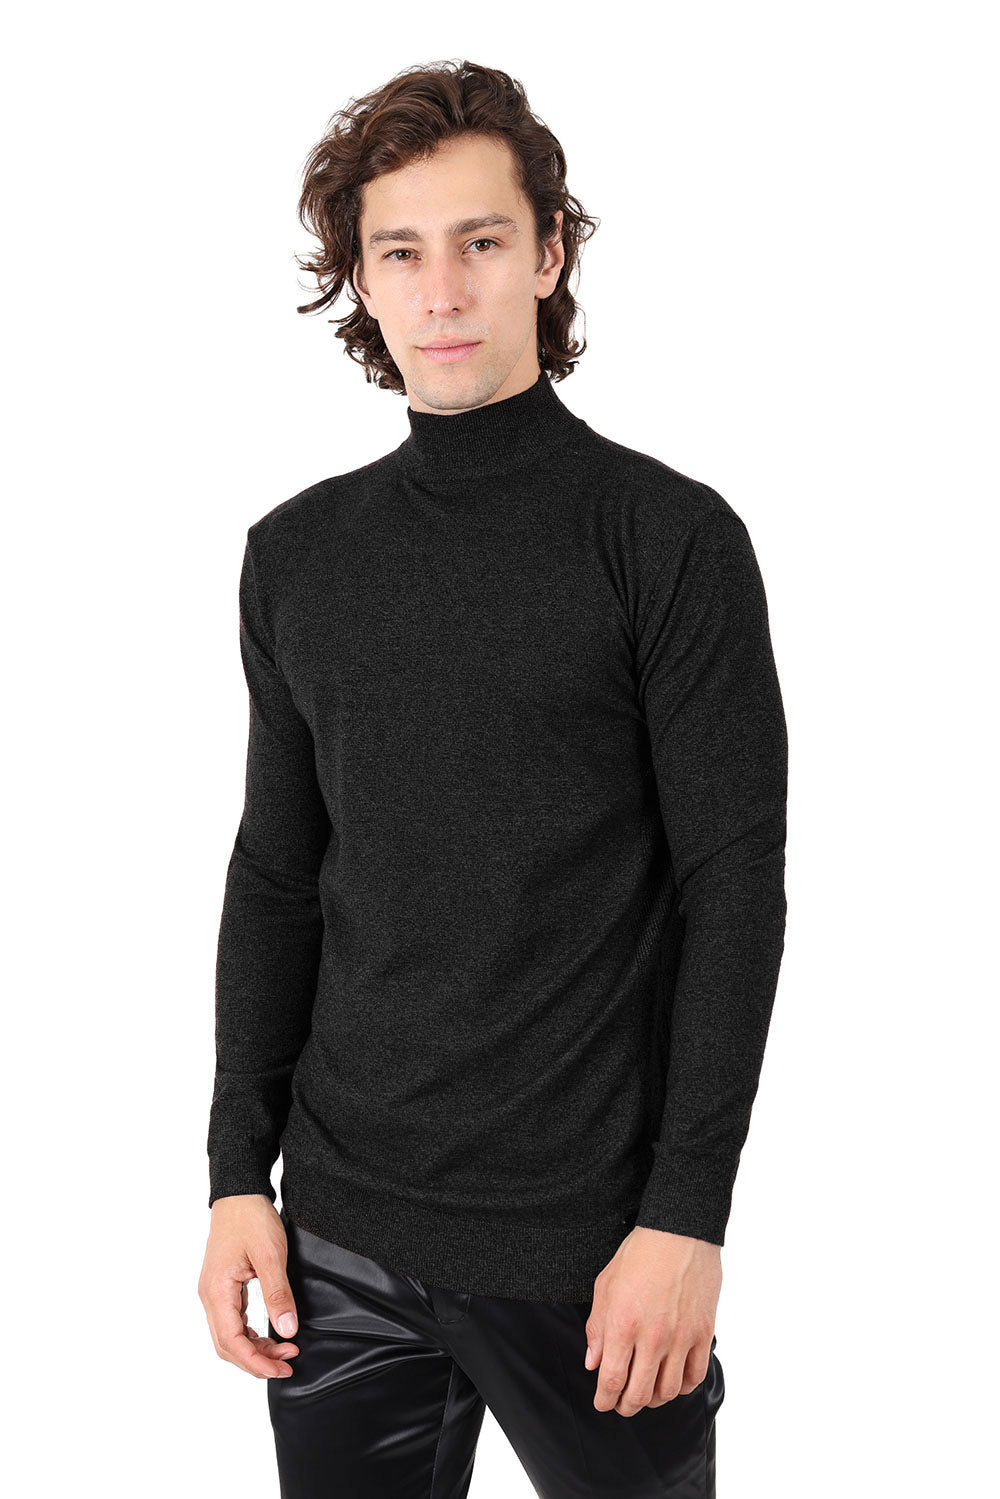 Men's Turtleneck Ribbed Solid Color Mock Turtleneck Sweater 2LS2103 Rust Black